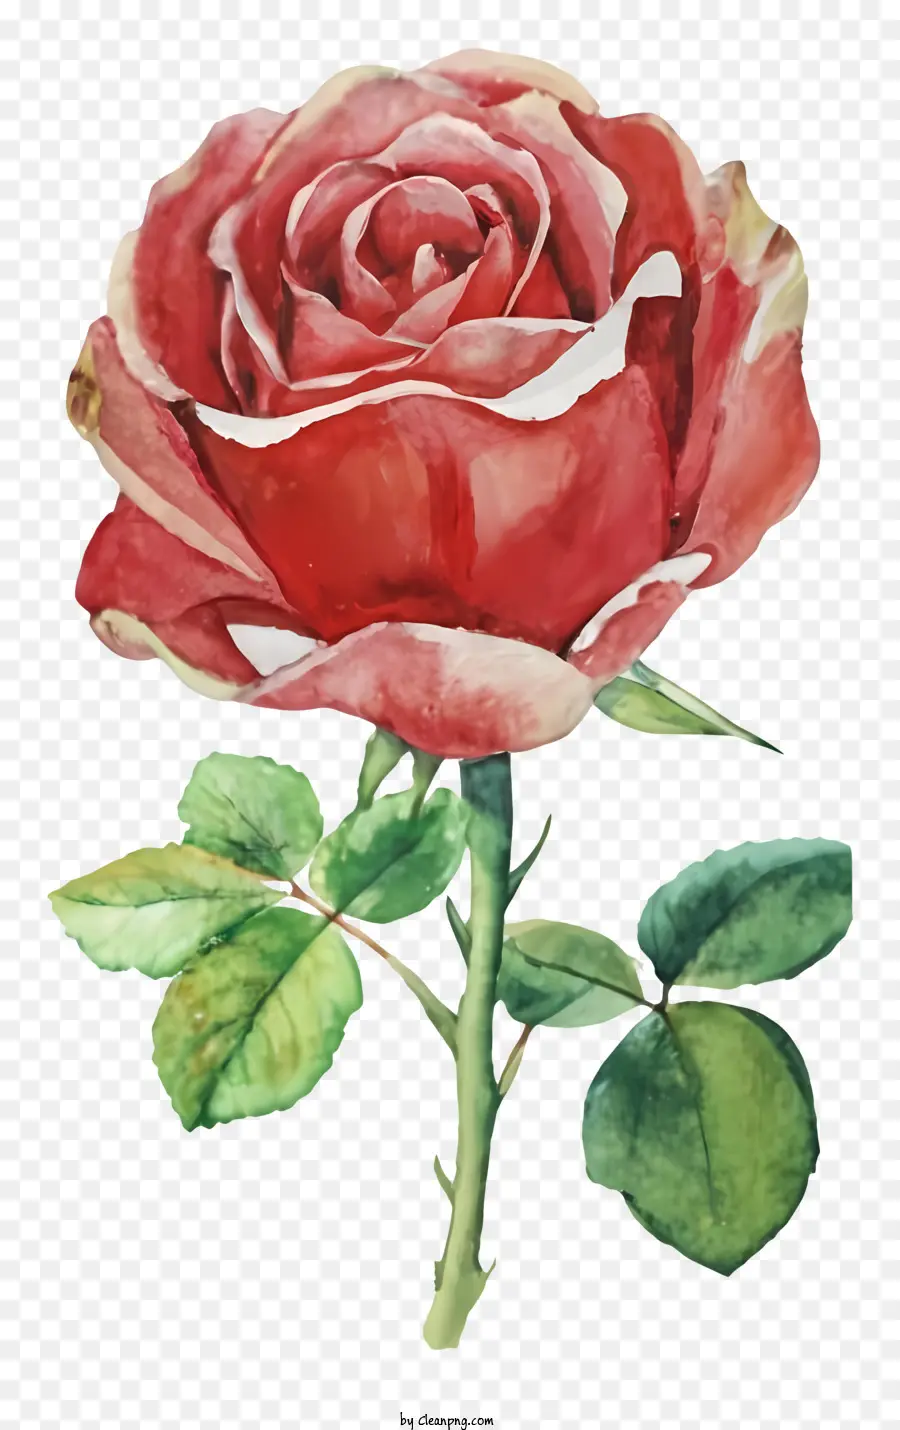 rosa rossa - Pittura ad acquerello di una rosa rossa rialzata